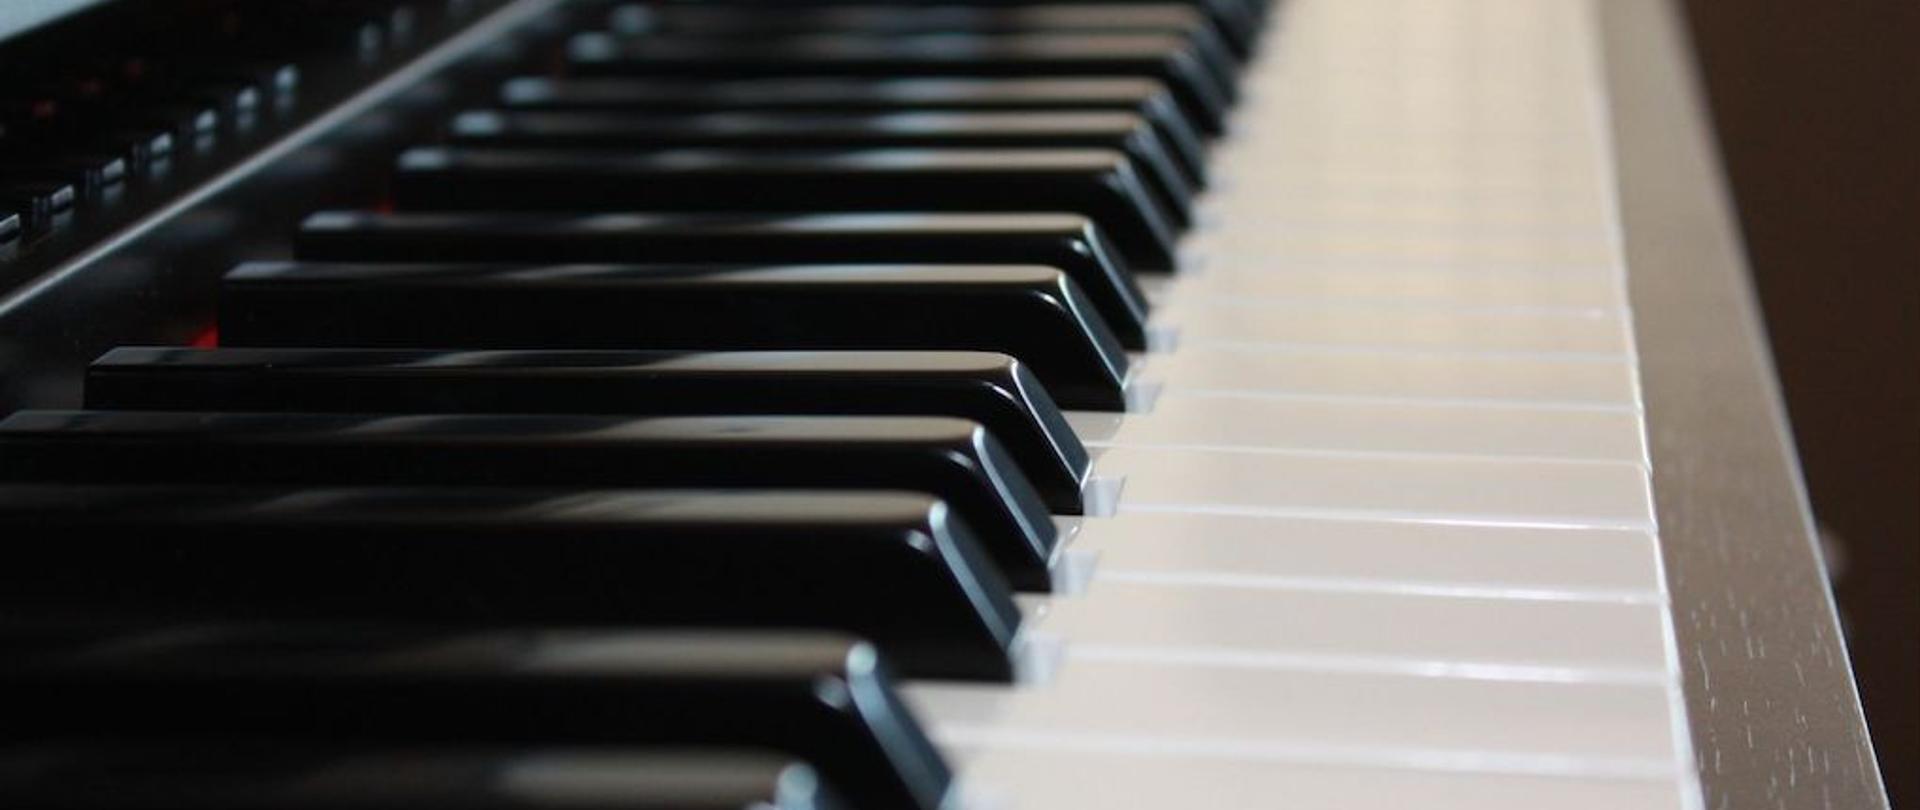 Zdjęcie klawiatury fortepianu z boku z lewej strony. Kolorystyka czarno biała.